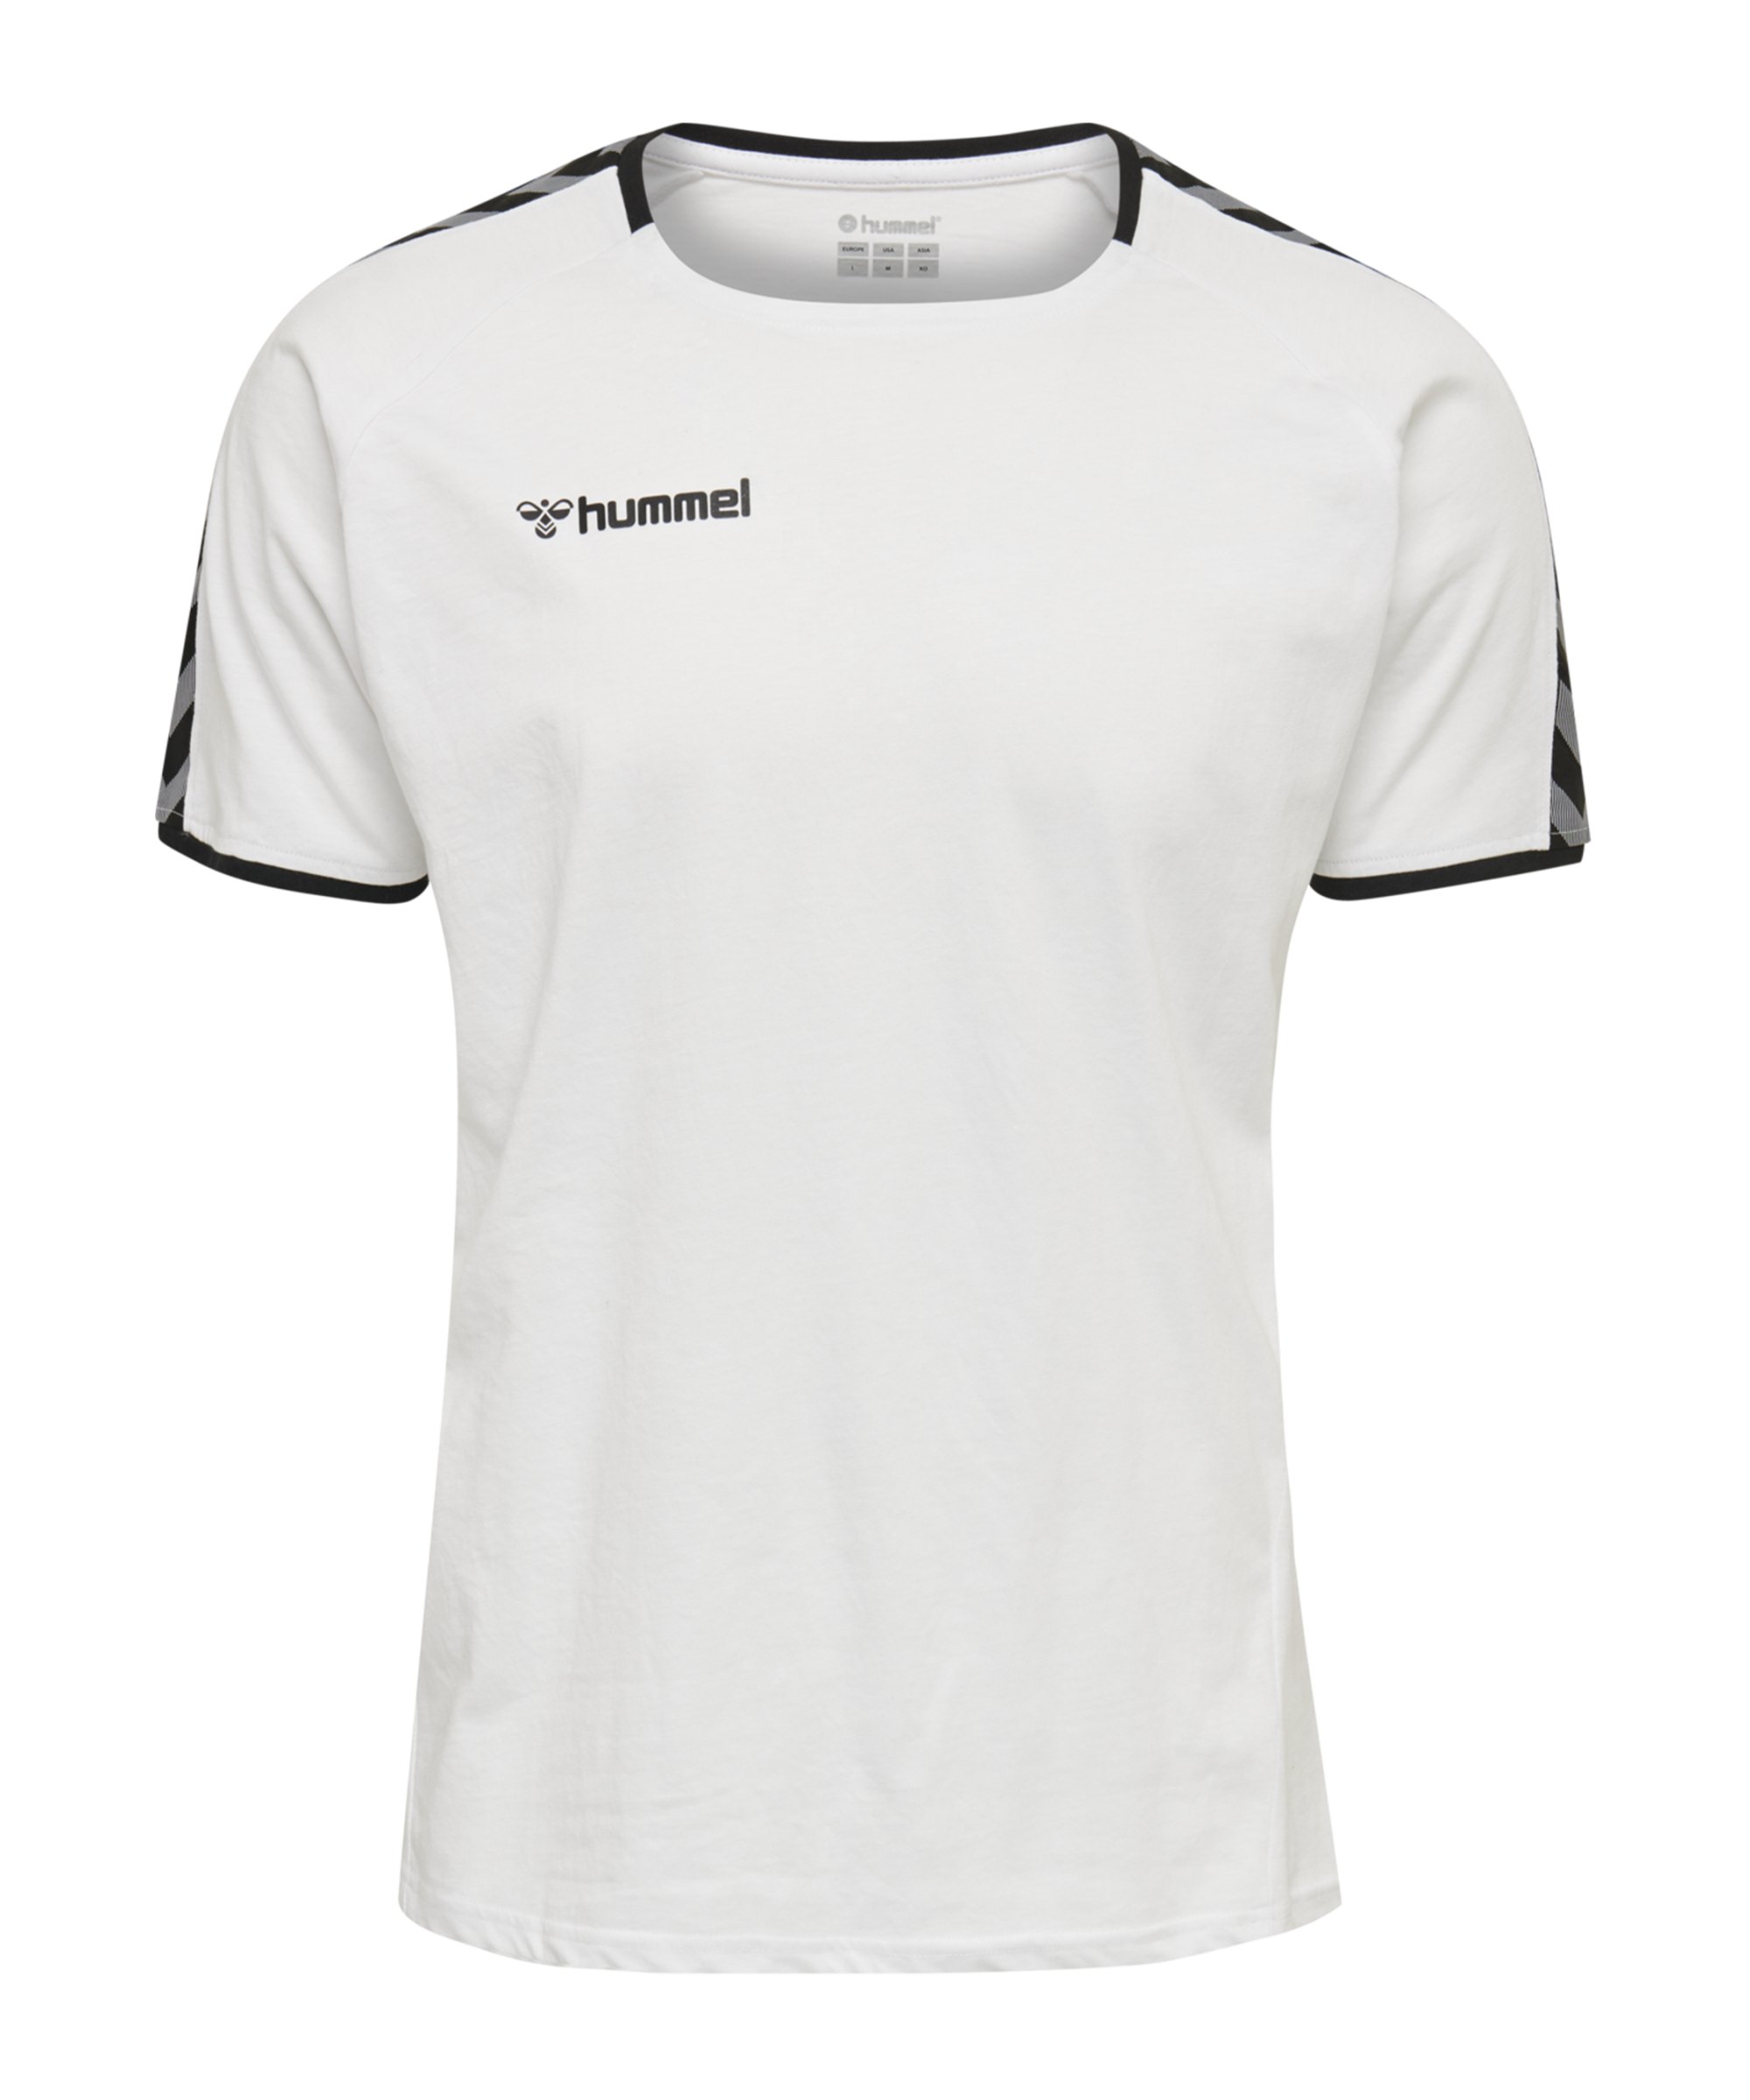 Hummel Authentic Trainingsshirt Kids Weiss F9001 - weiss